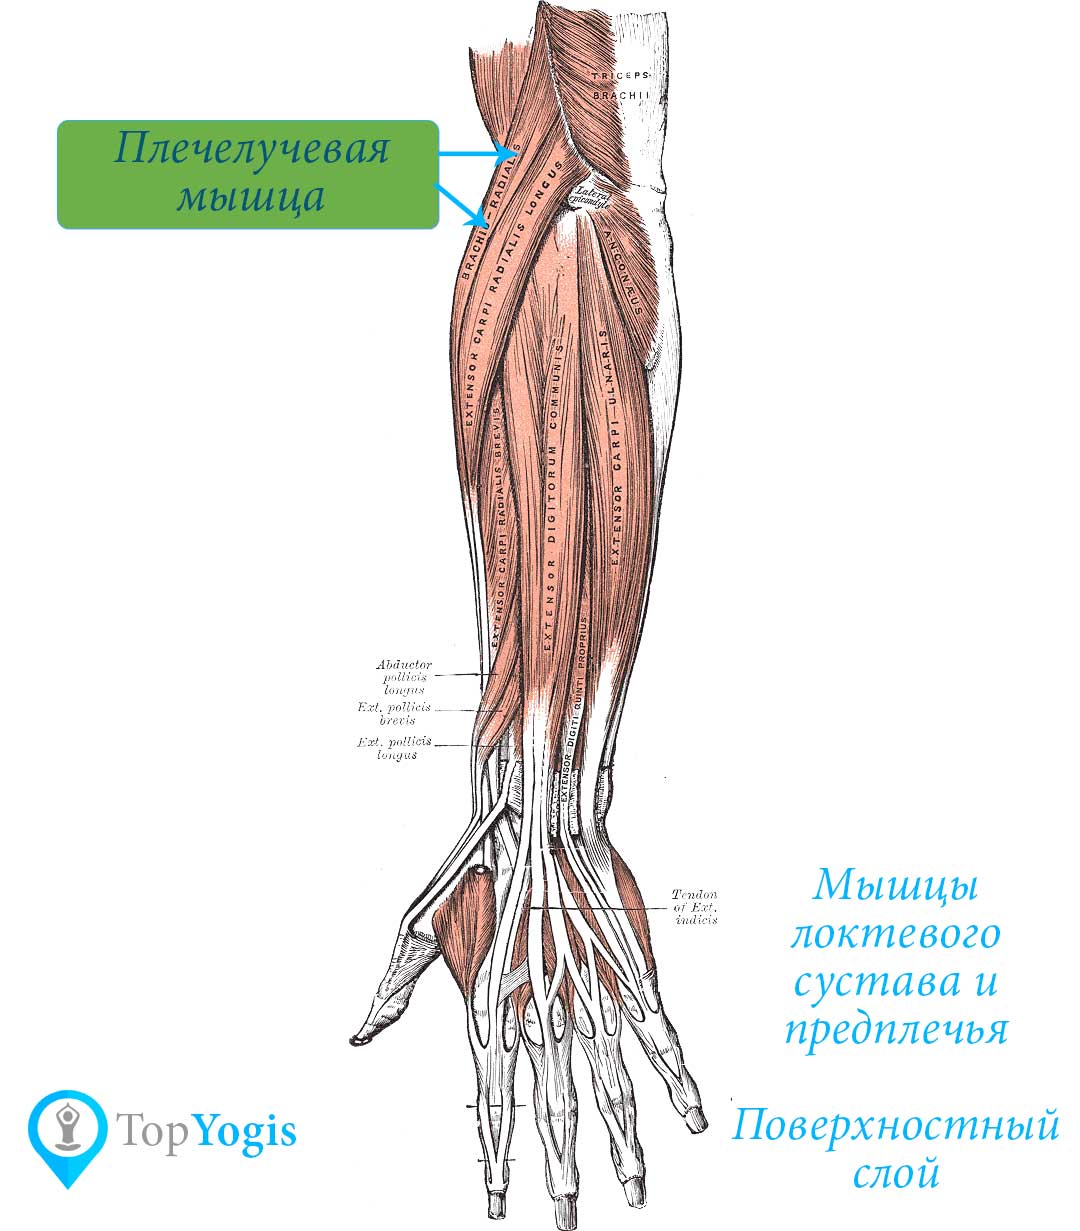 Плечелучевая мышца руки и плеча асаны и практики анатомия йоги